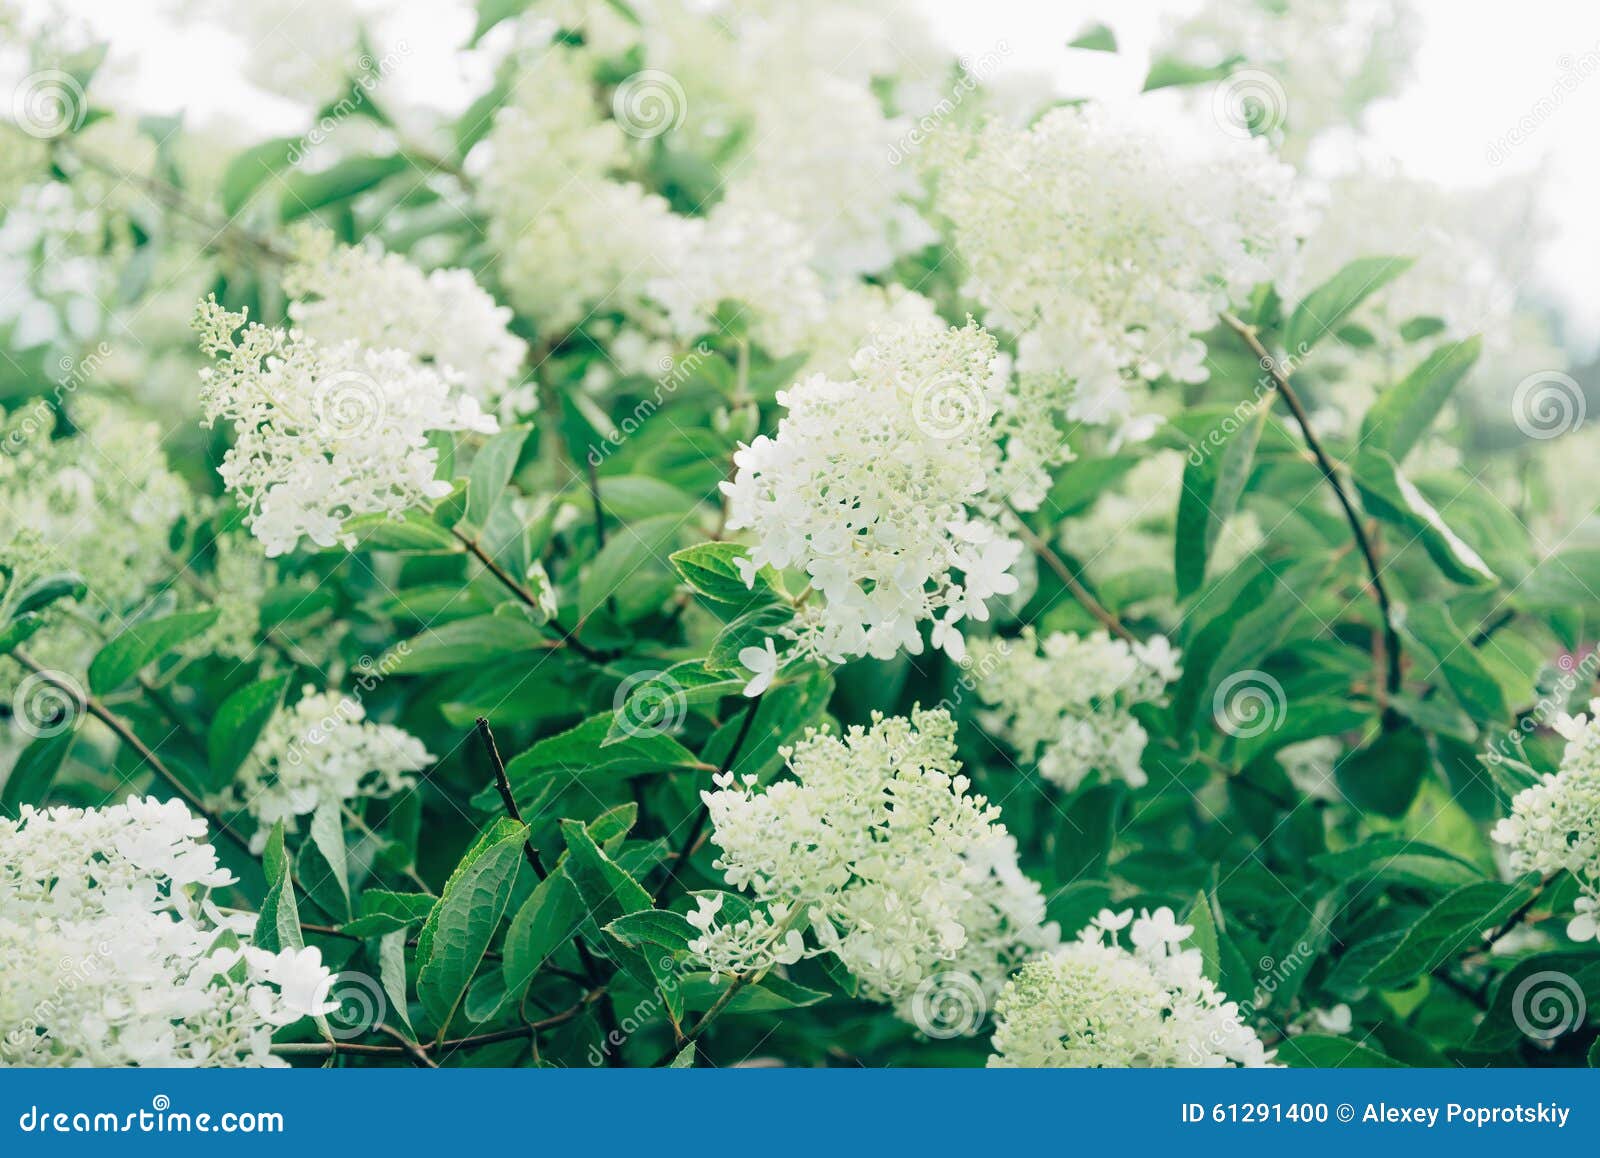 Arbusto Con I Fiori Bianchi Fotografia Stock - Immagine di bianco, herbal: 61291400